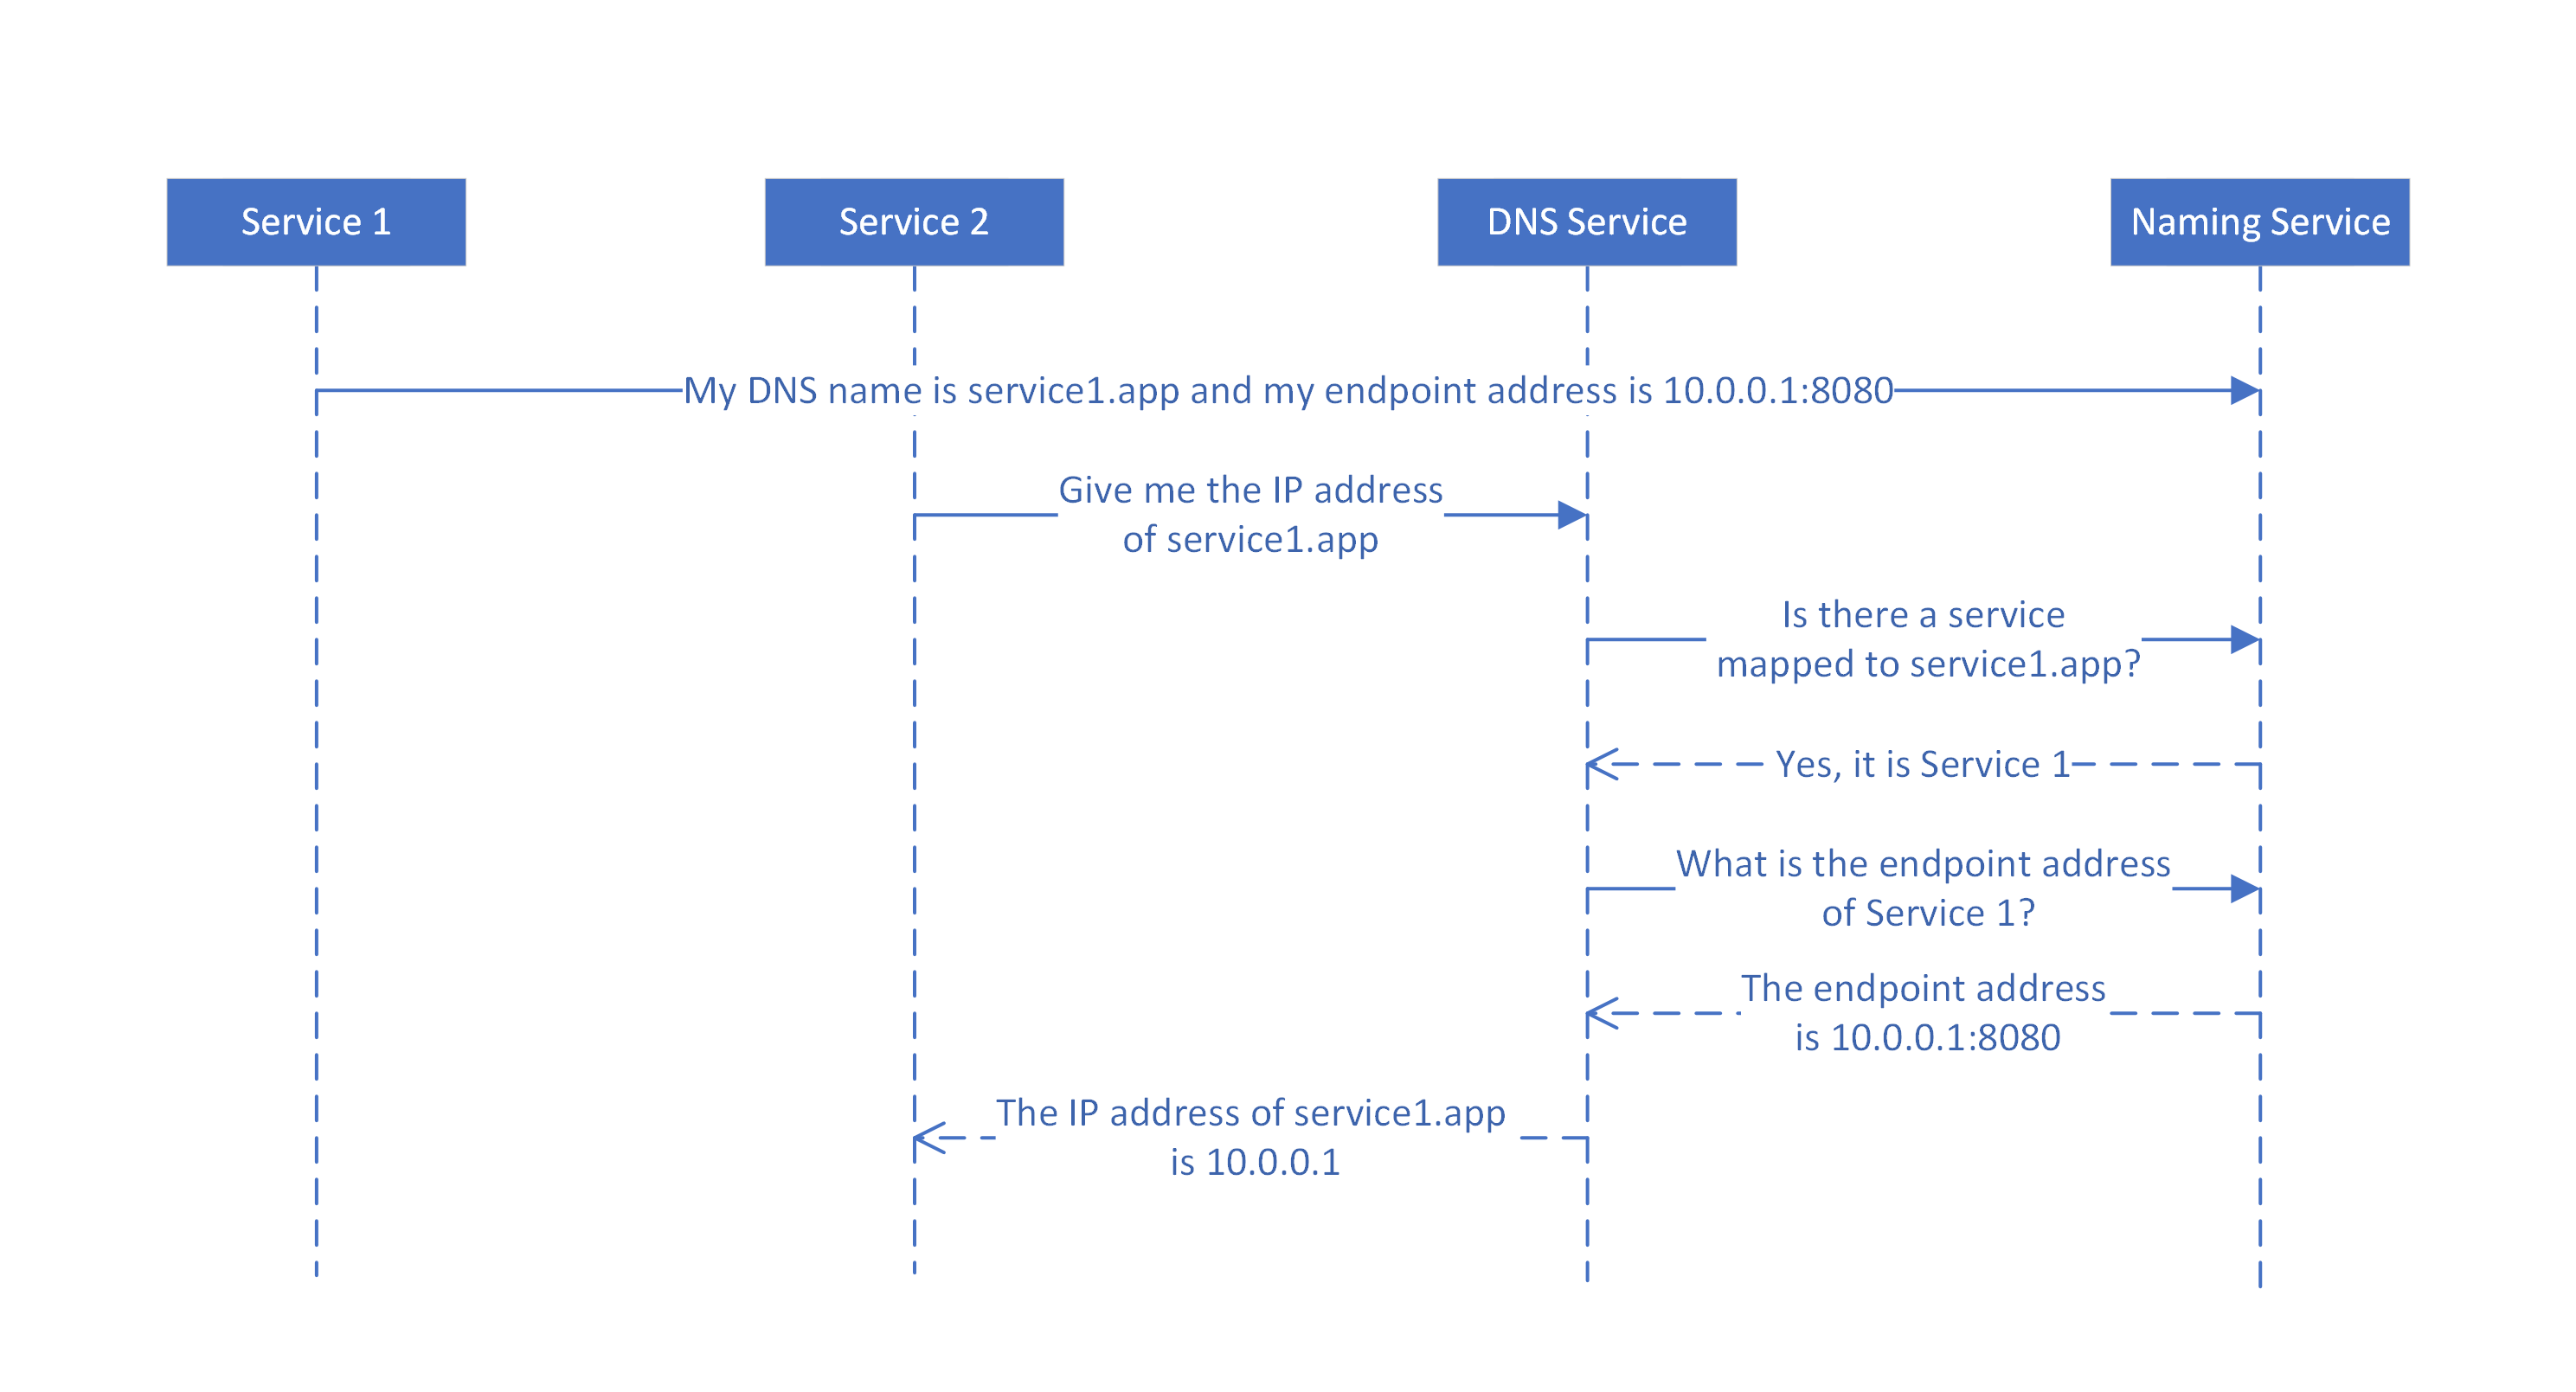 رسم تخطيطي يوضح كيفية تعيين أسماء DNS إلى أسماء الخدمات بواسطة خدمة DNS للخدمات عديمة الحالة.